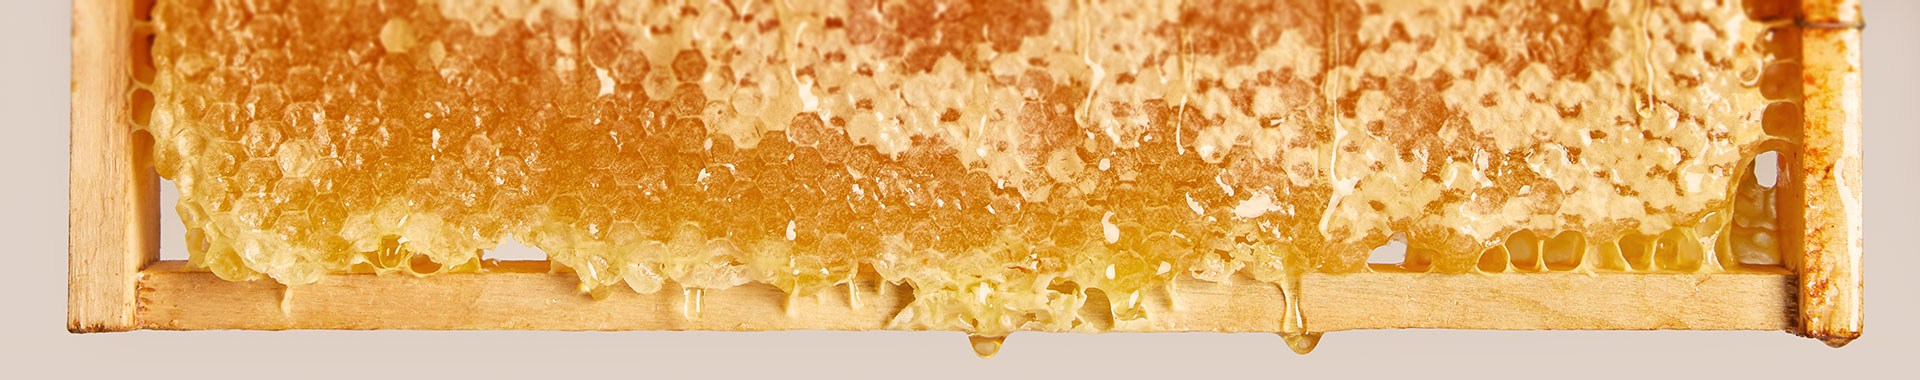 Bienenwabe voller Honig